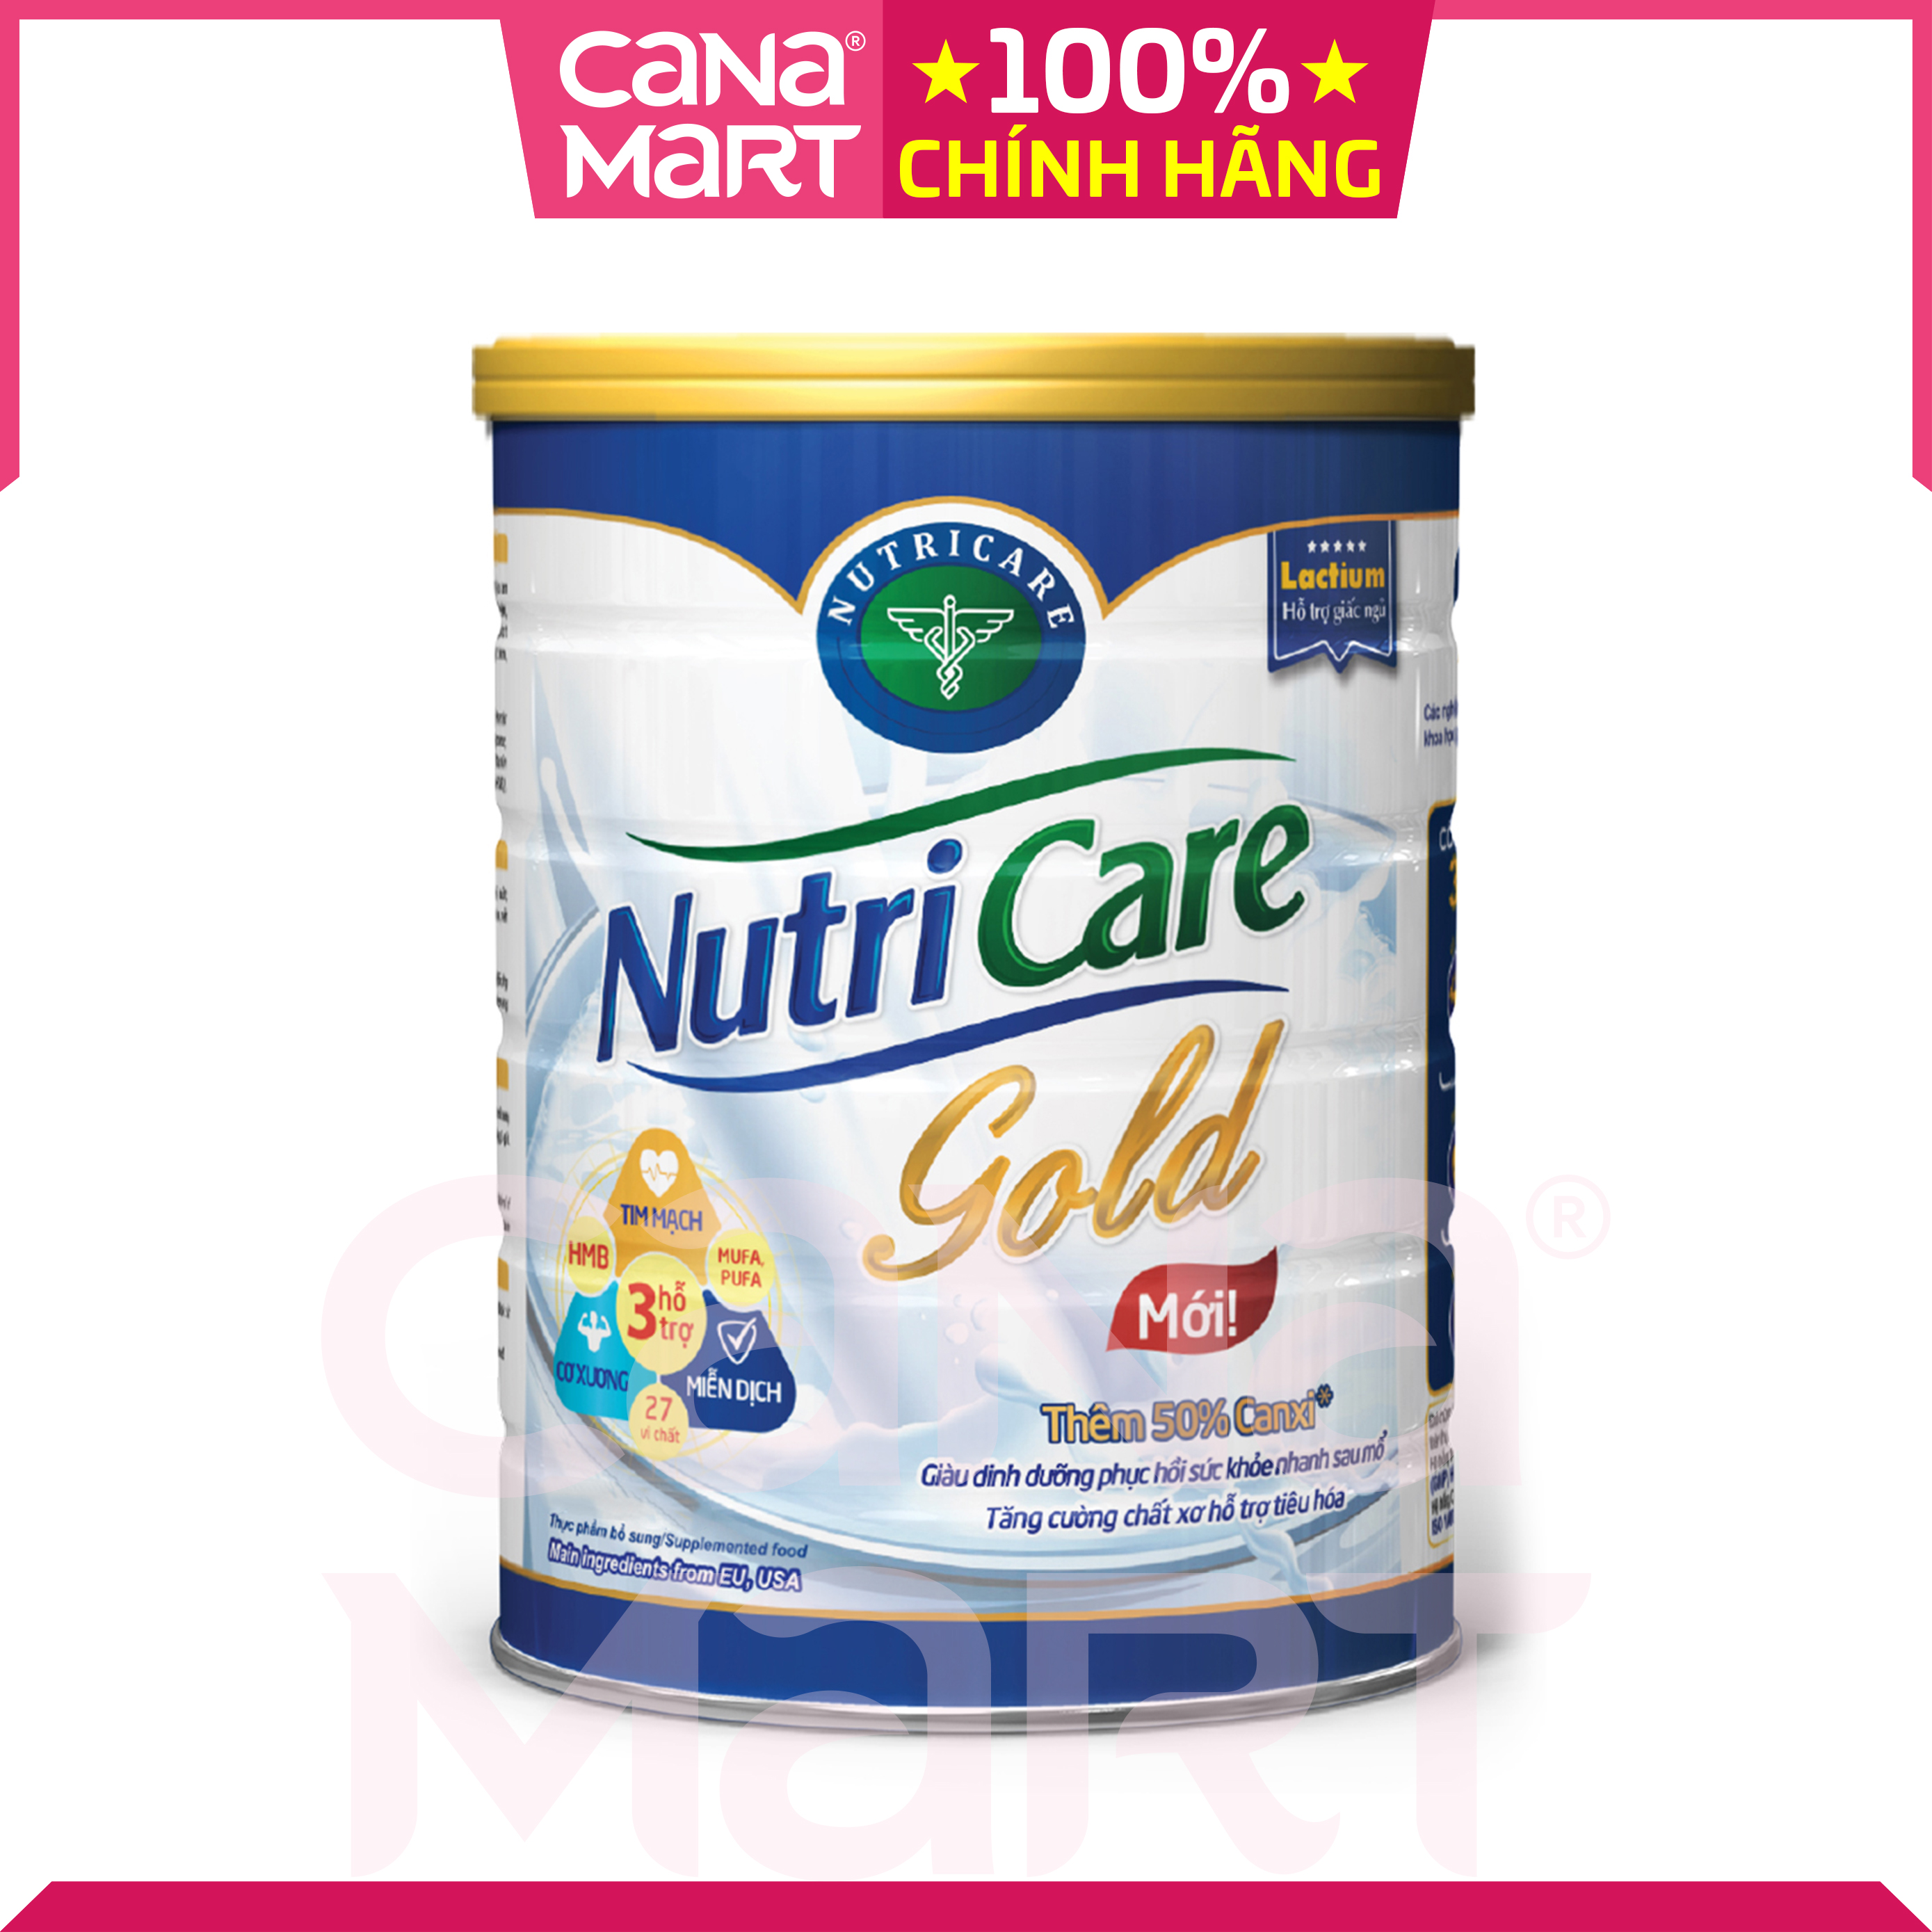 Sữa bột Nutricare Gold bổ sung dinh dưỡng cho người lớn tuổi, người suy nhược cơ thể (850g)